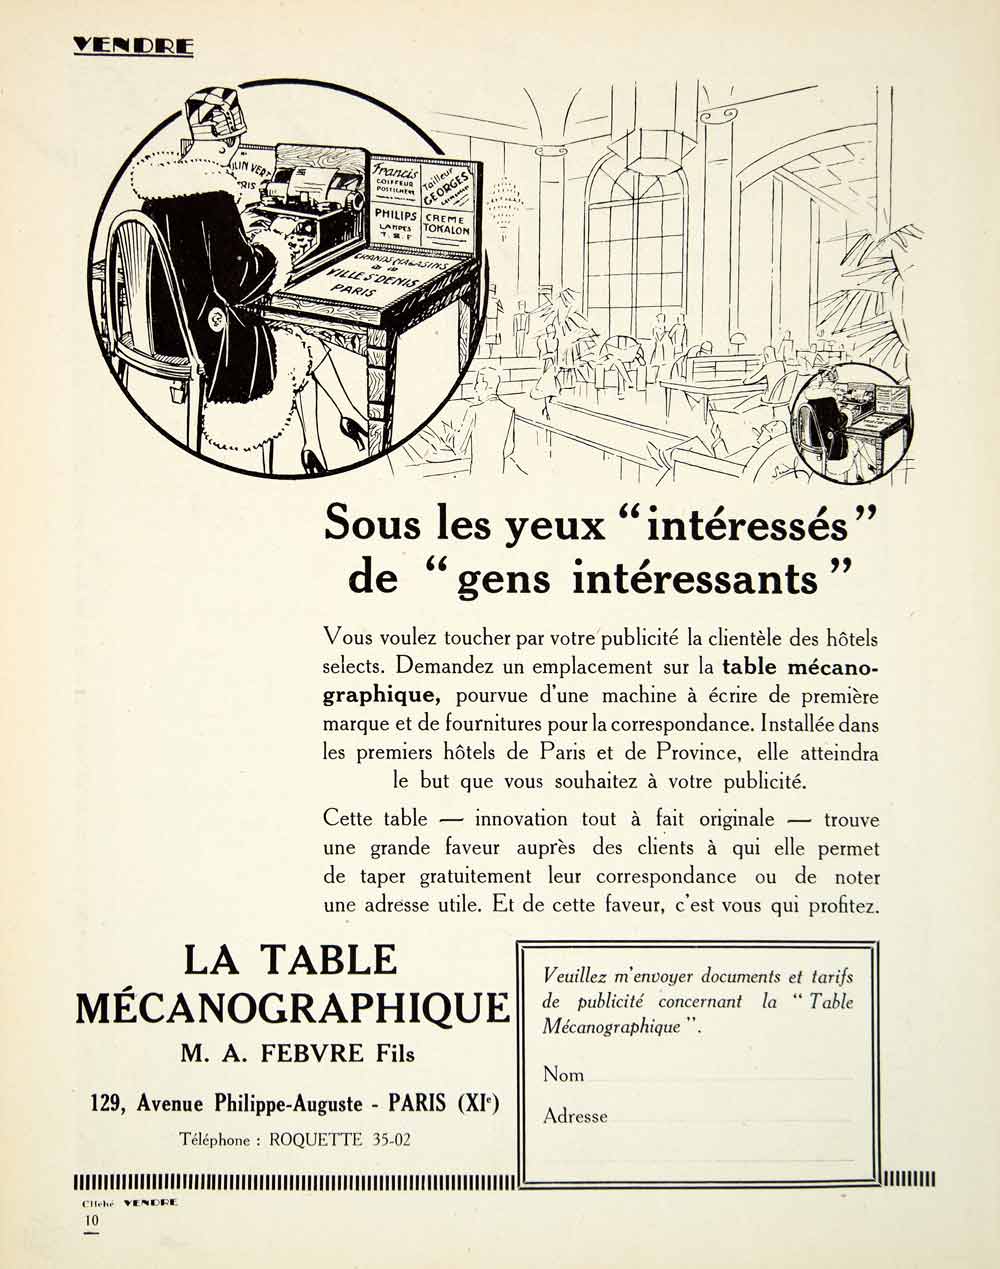 1926 Ad Table Mecanographique 129 Avenue Philippe-Auguste Paris Typing A VENA3